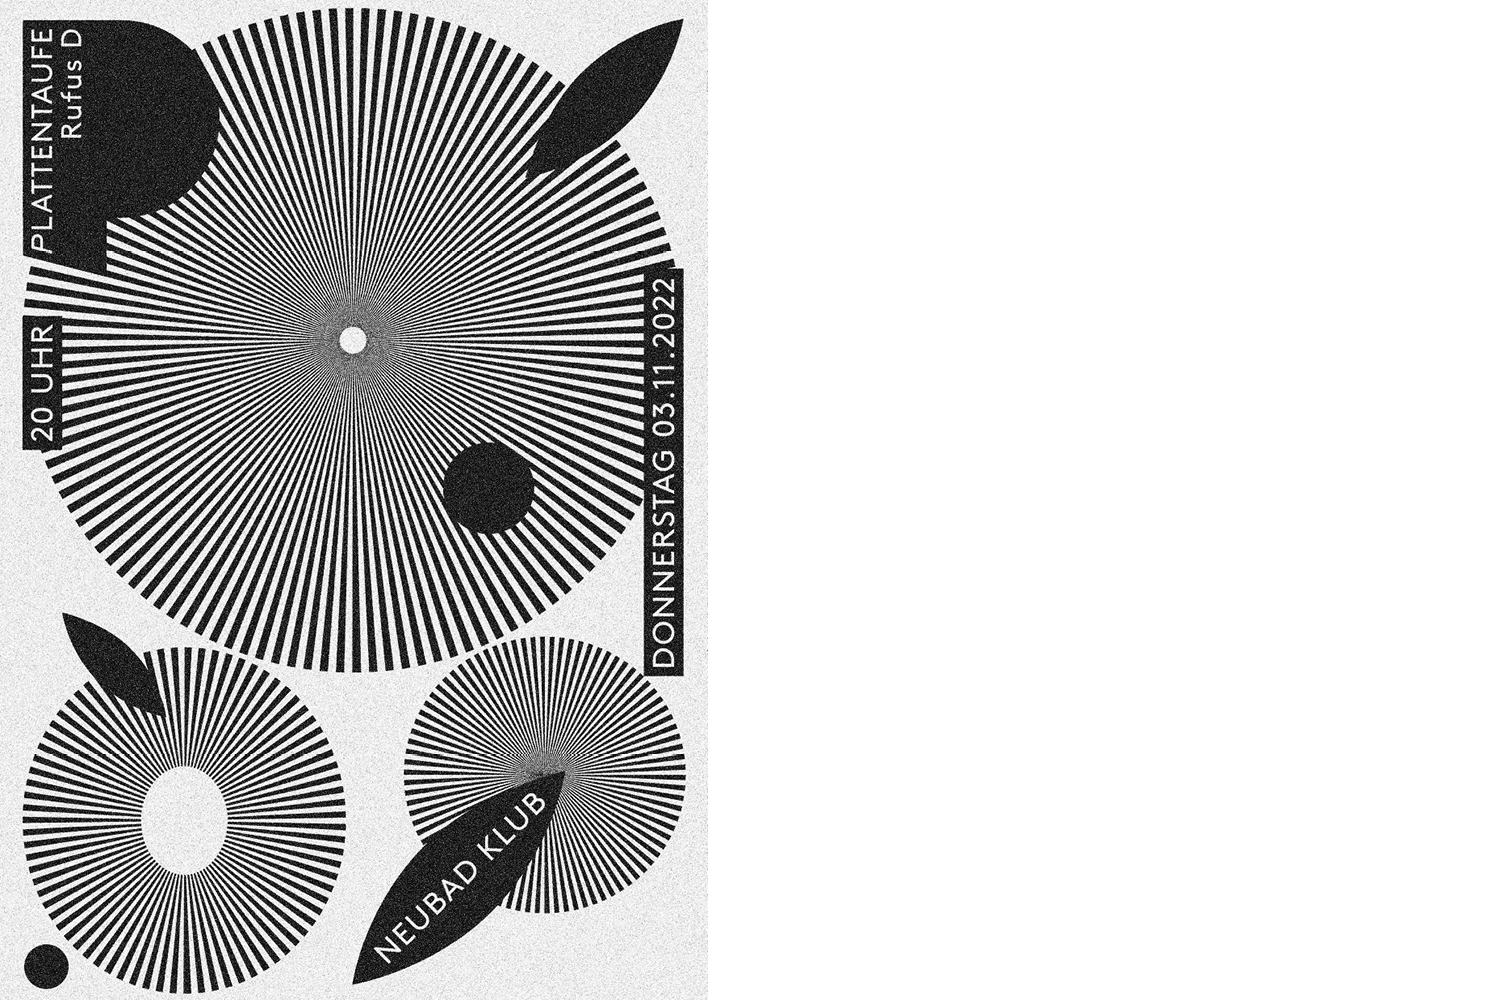 Plakat für die Plattentaufe von Rufus D mit vier Kreisen und sonstigen geometrischne Formen